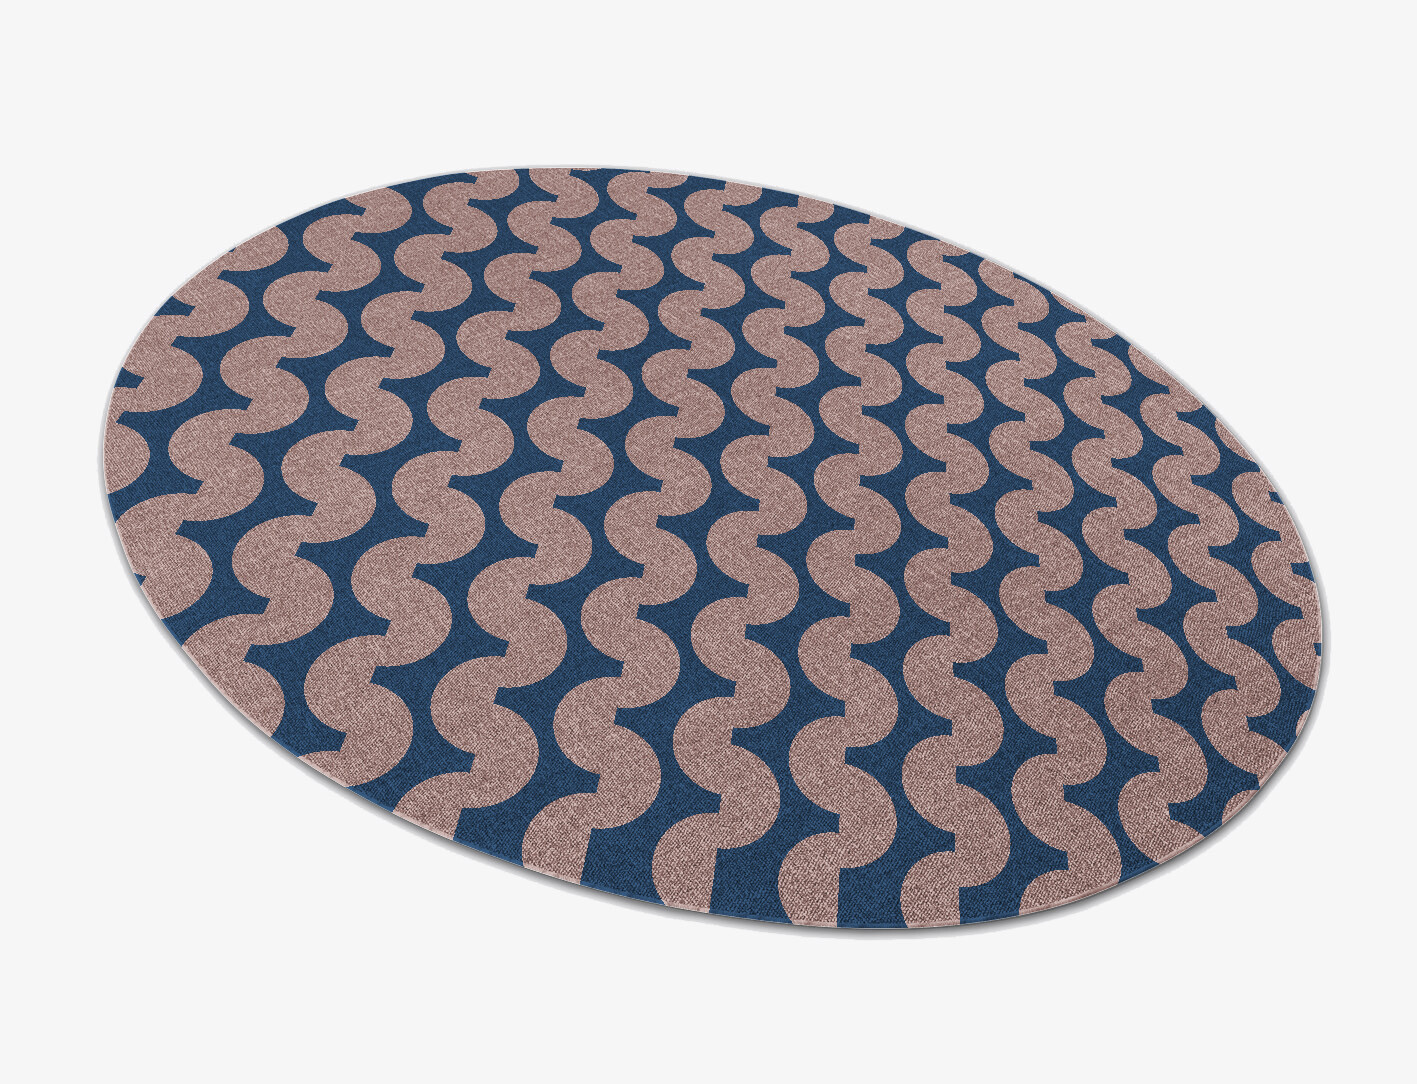 Artemis Geometric Oval Flatweave New Zealand Wool Custom Rug by Rug Artisan